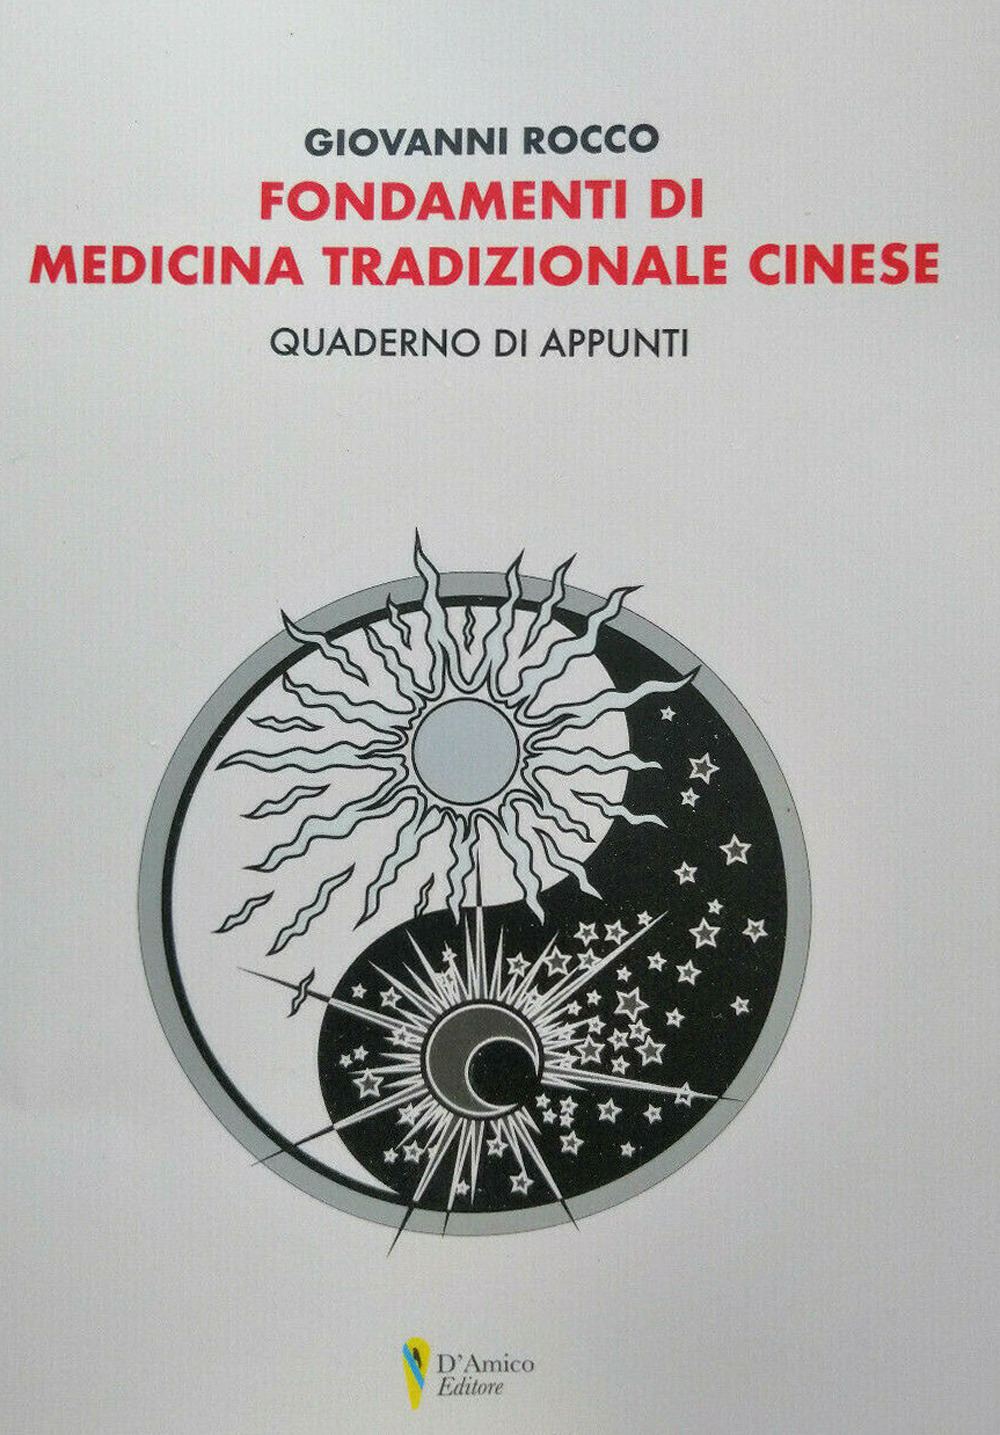 Image of Fondamenti di medicina tradizionale cinese. Quaderno di appunti